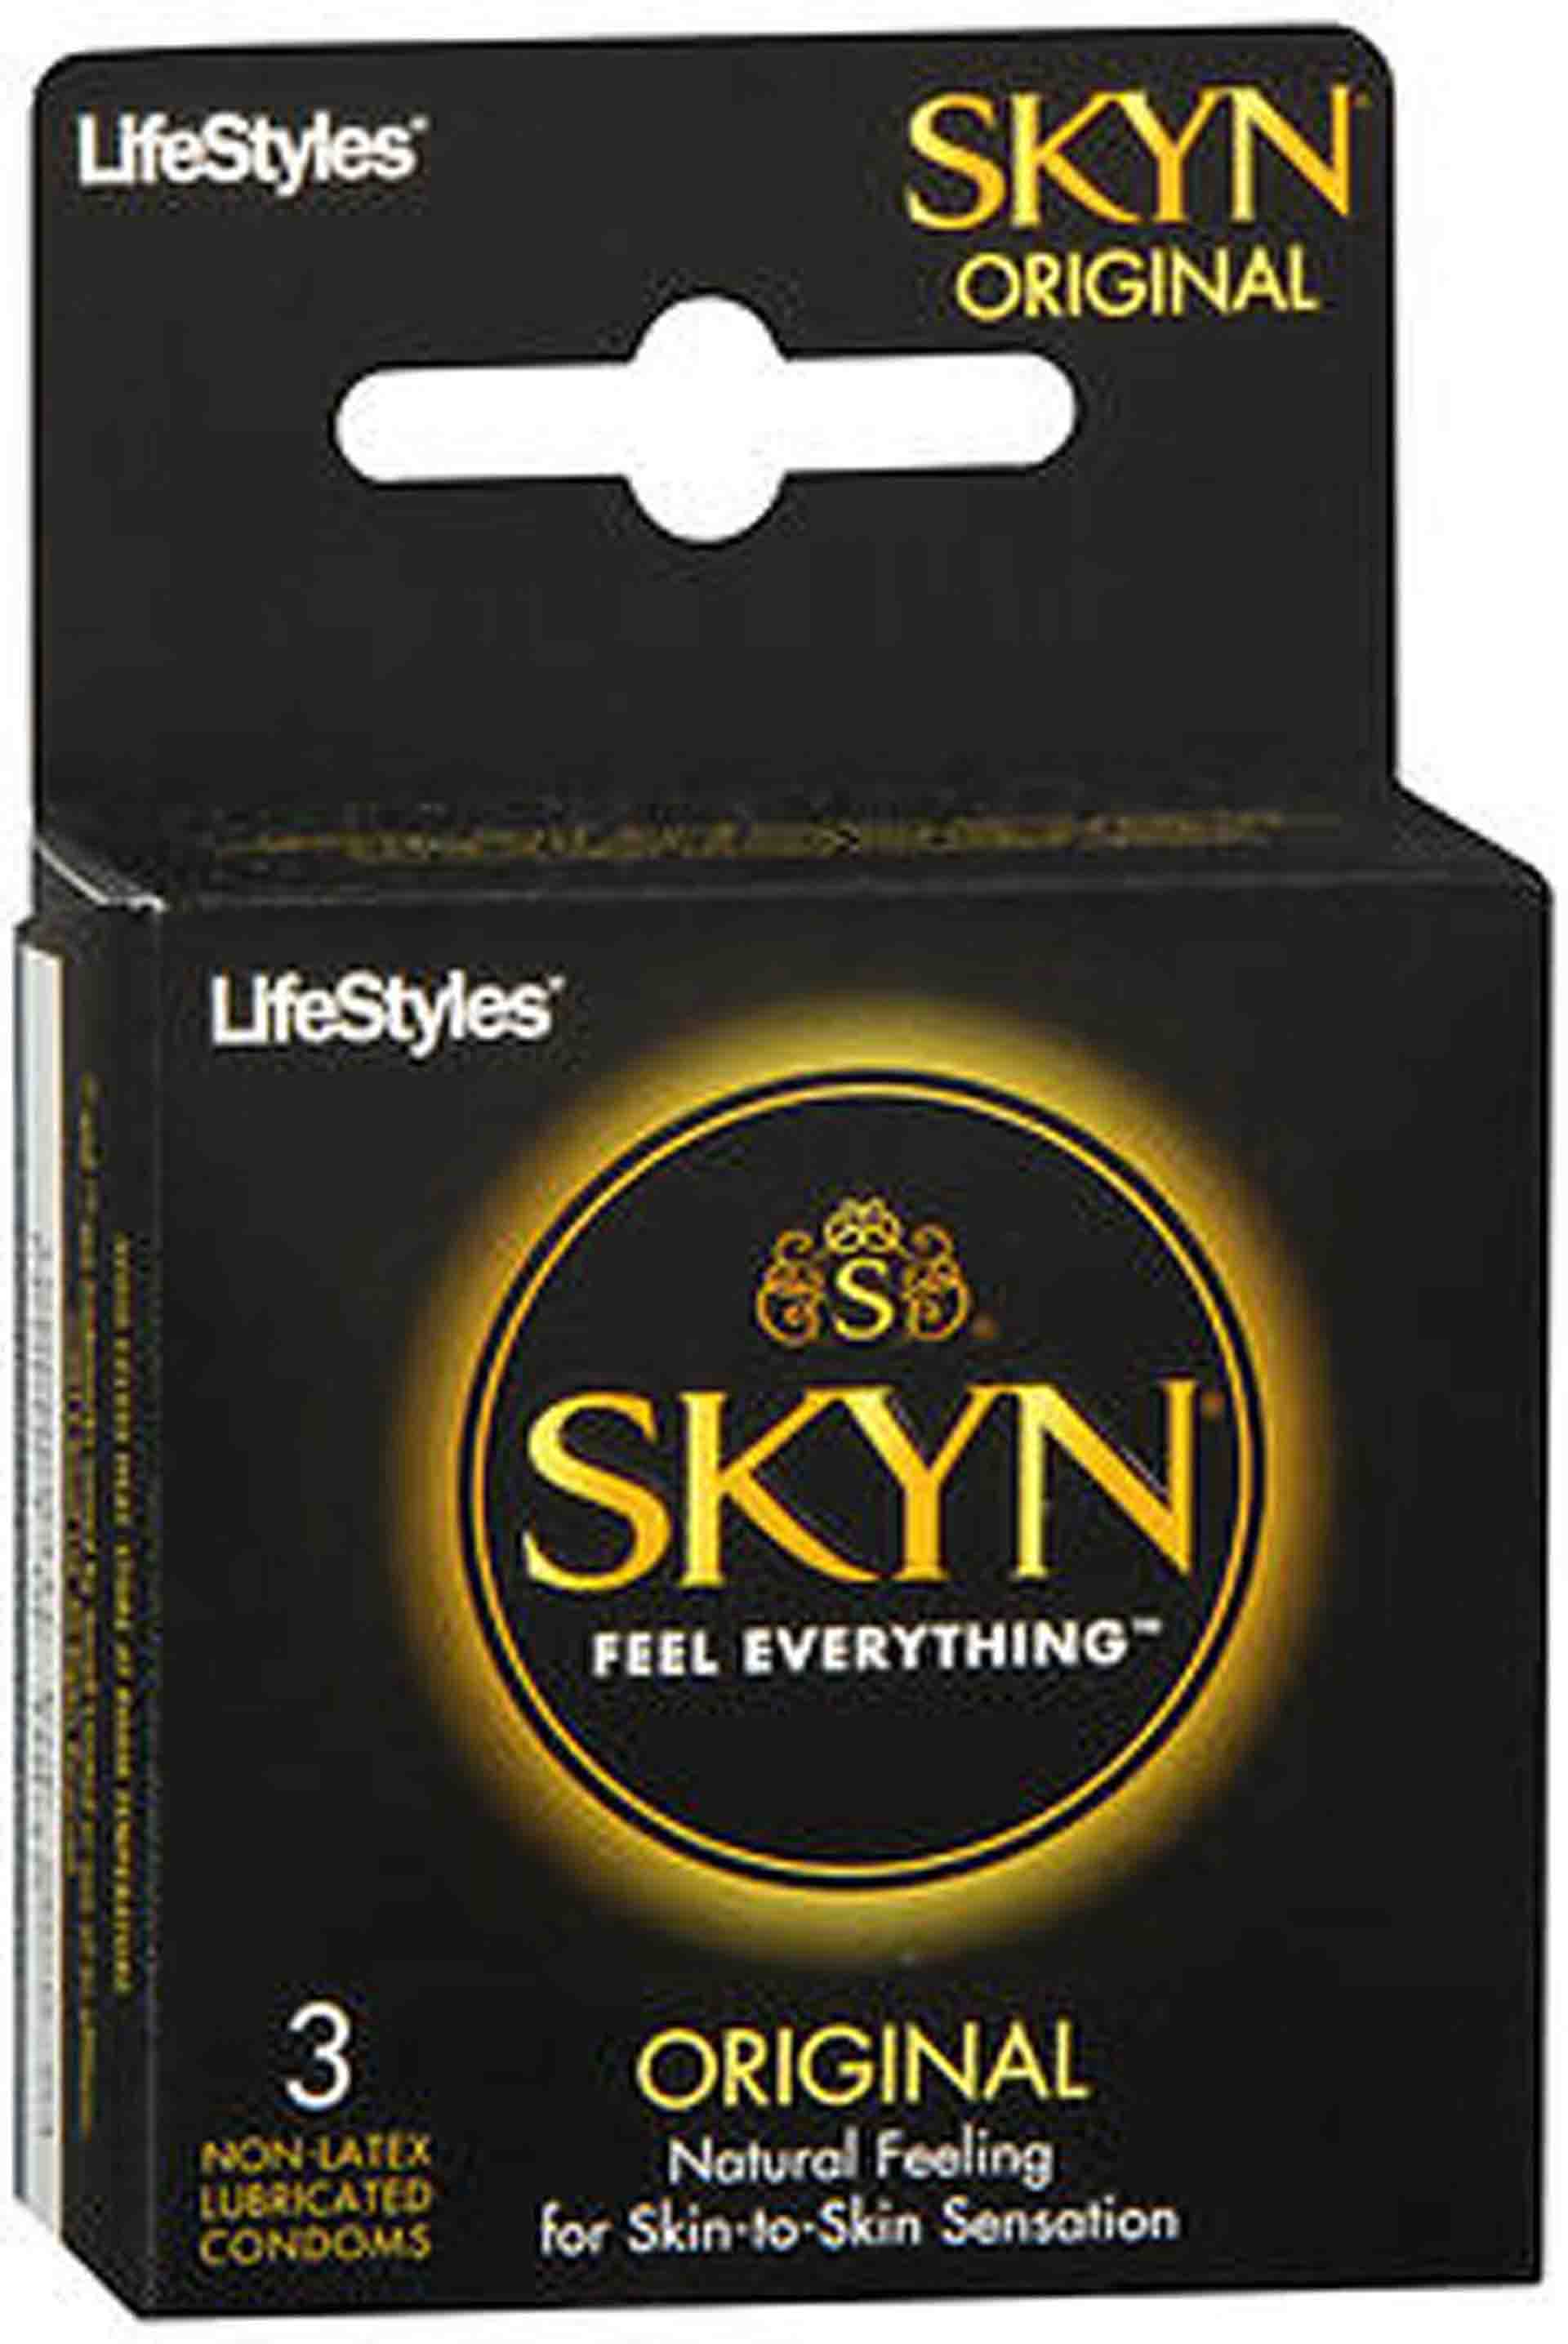 Lifestyles Skyn Condoms Original 3 Pack.